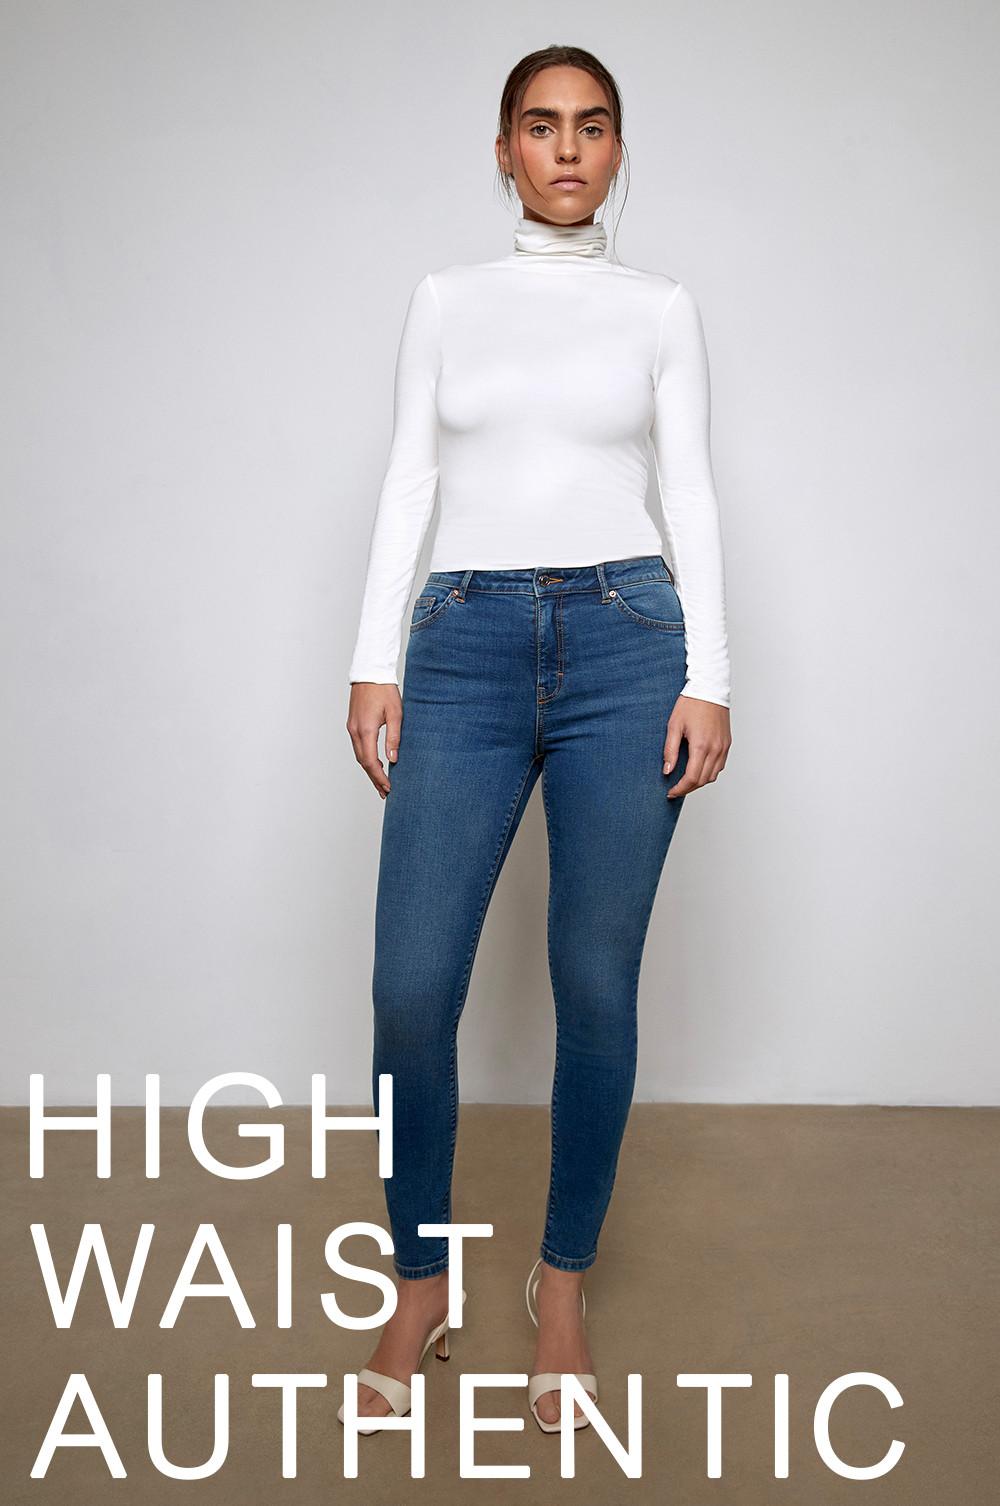 Die authentische High Waist Jeans